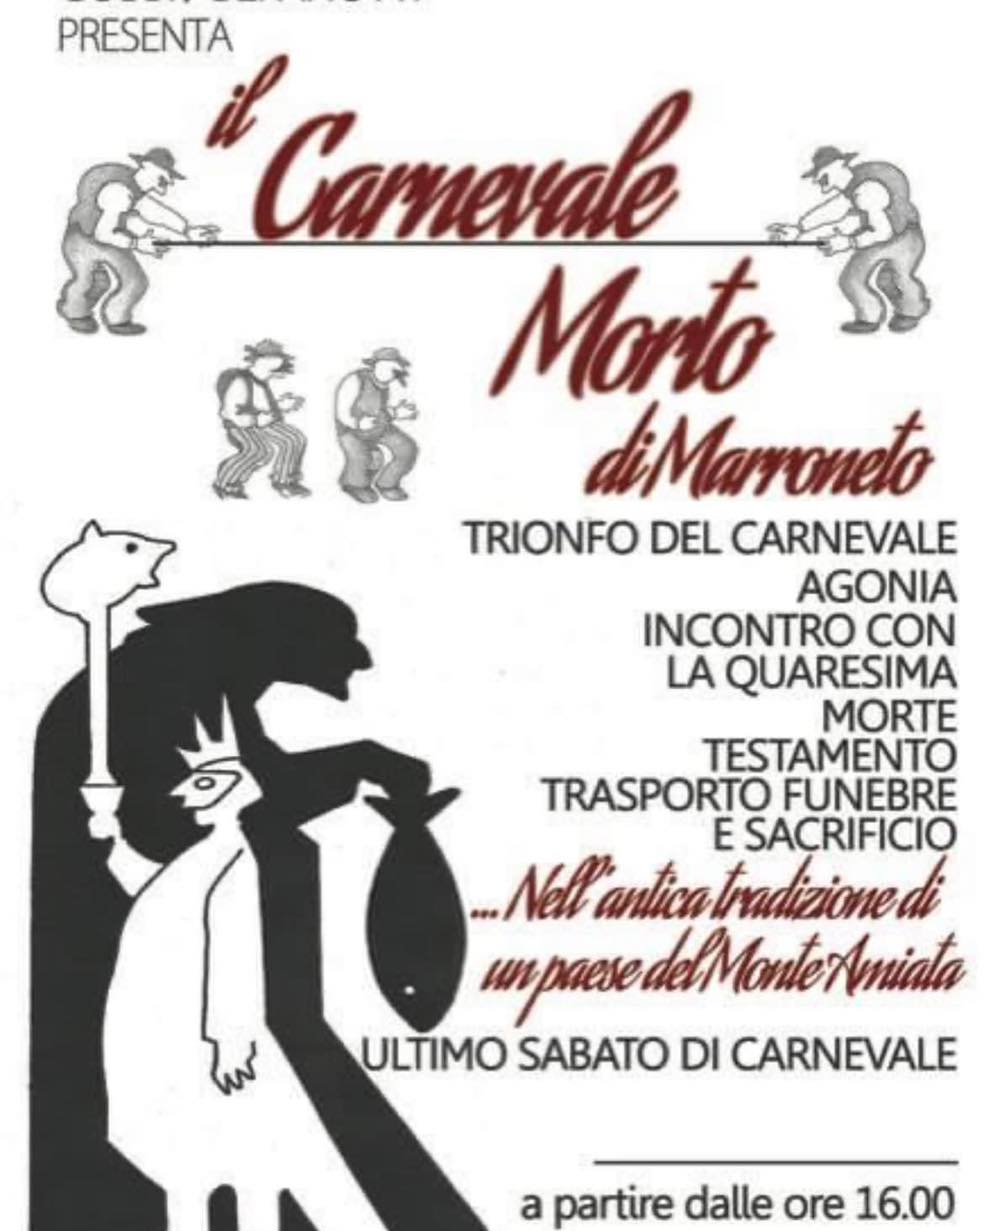 Locandina Carnevale Morto di Marroneto a Santa Fiora